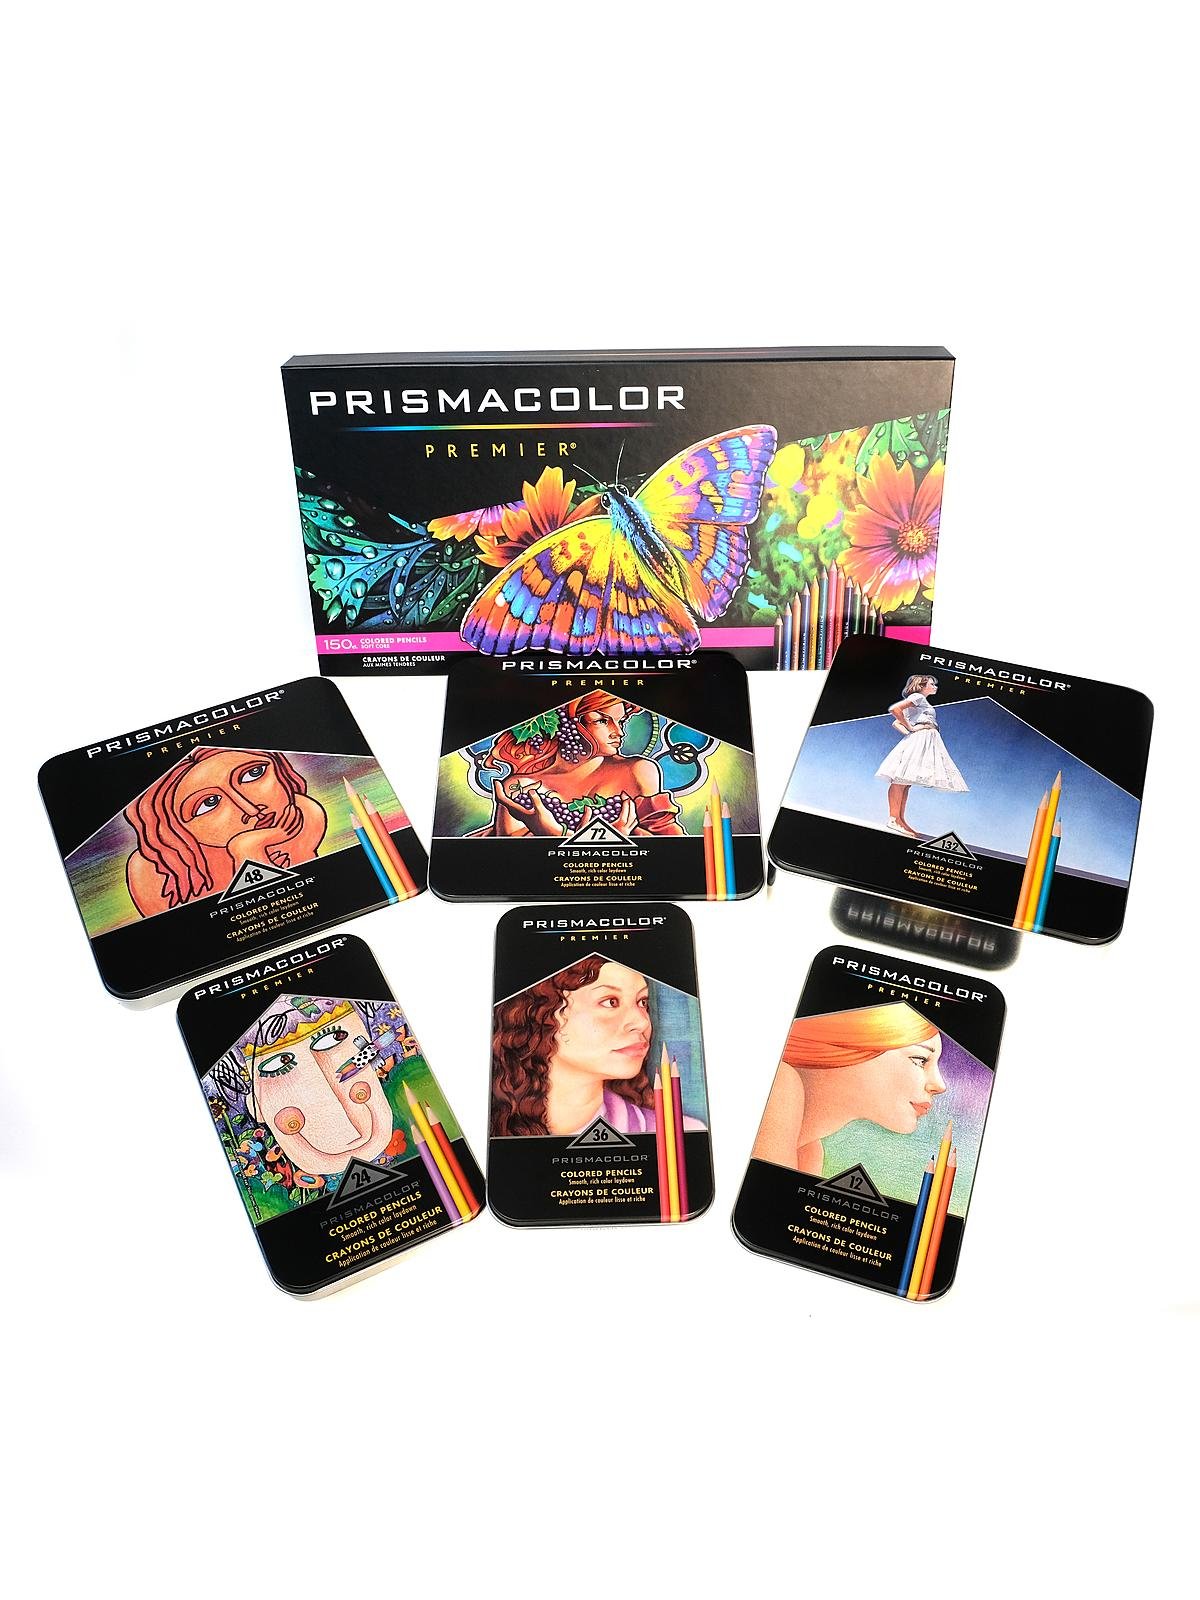 Prismacolor Premier Colored Pencil Sets | MisterArt.com